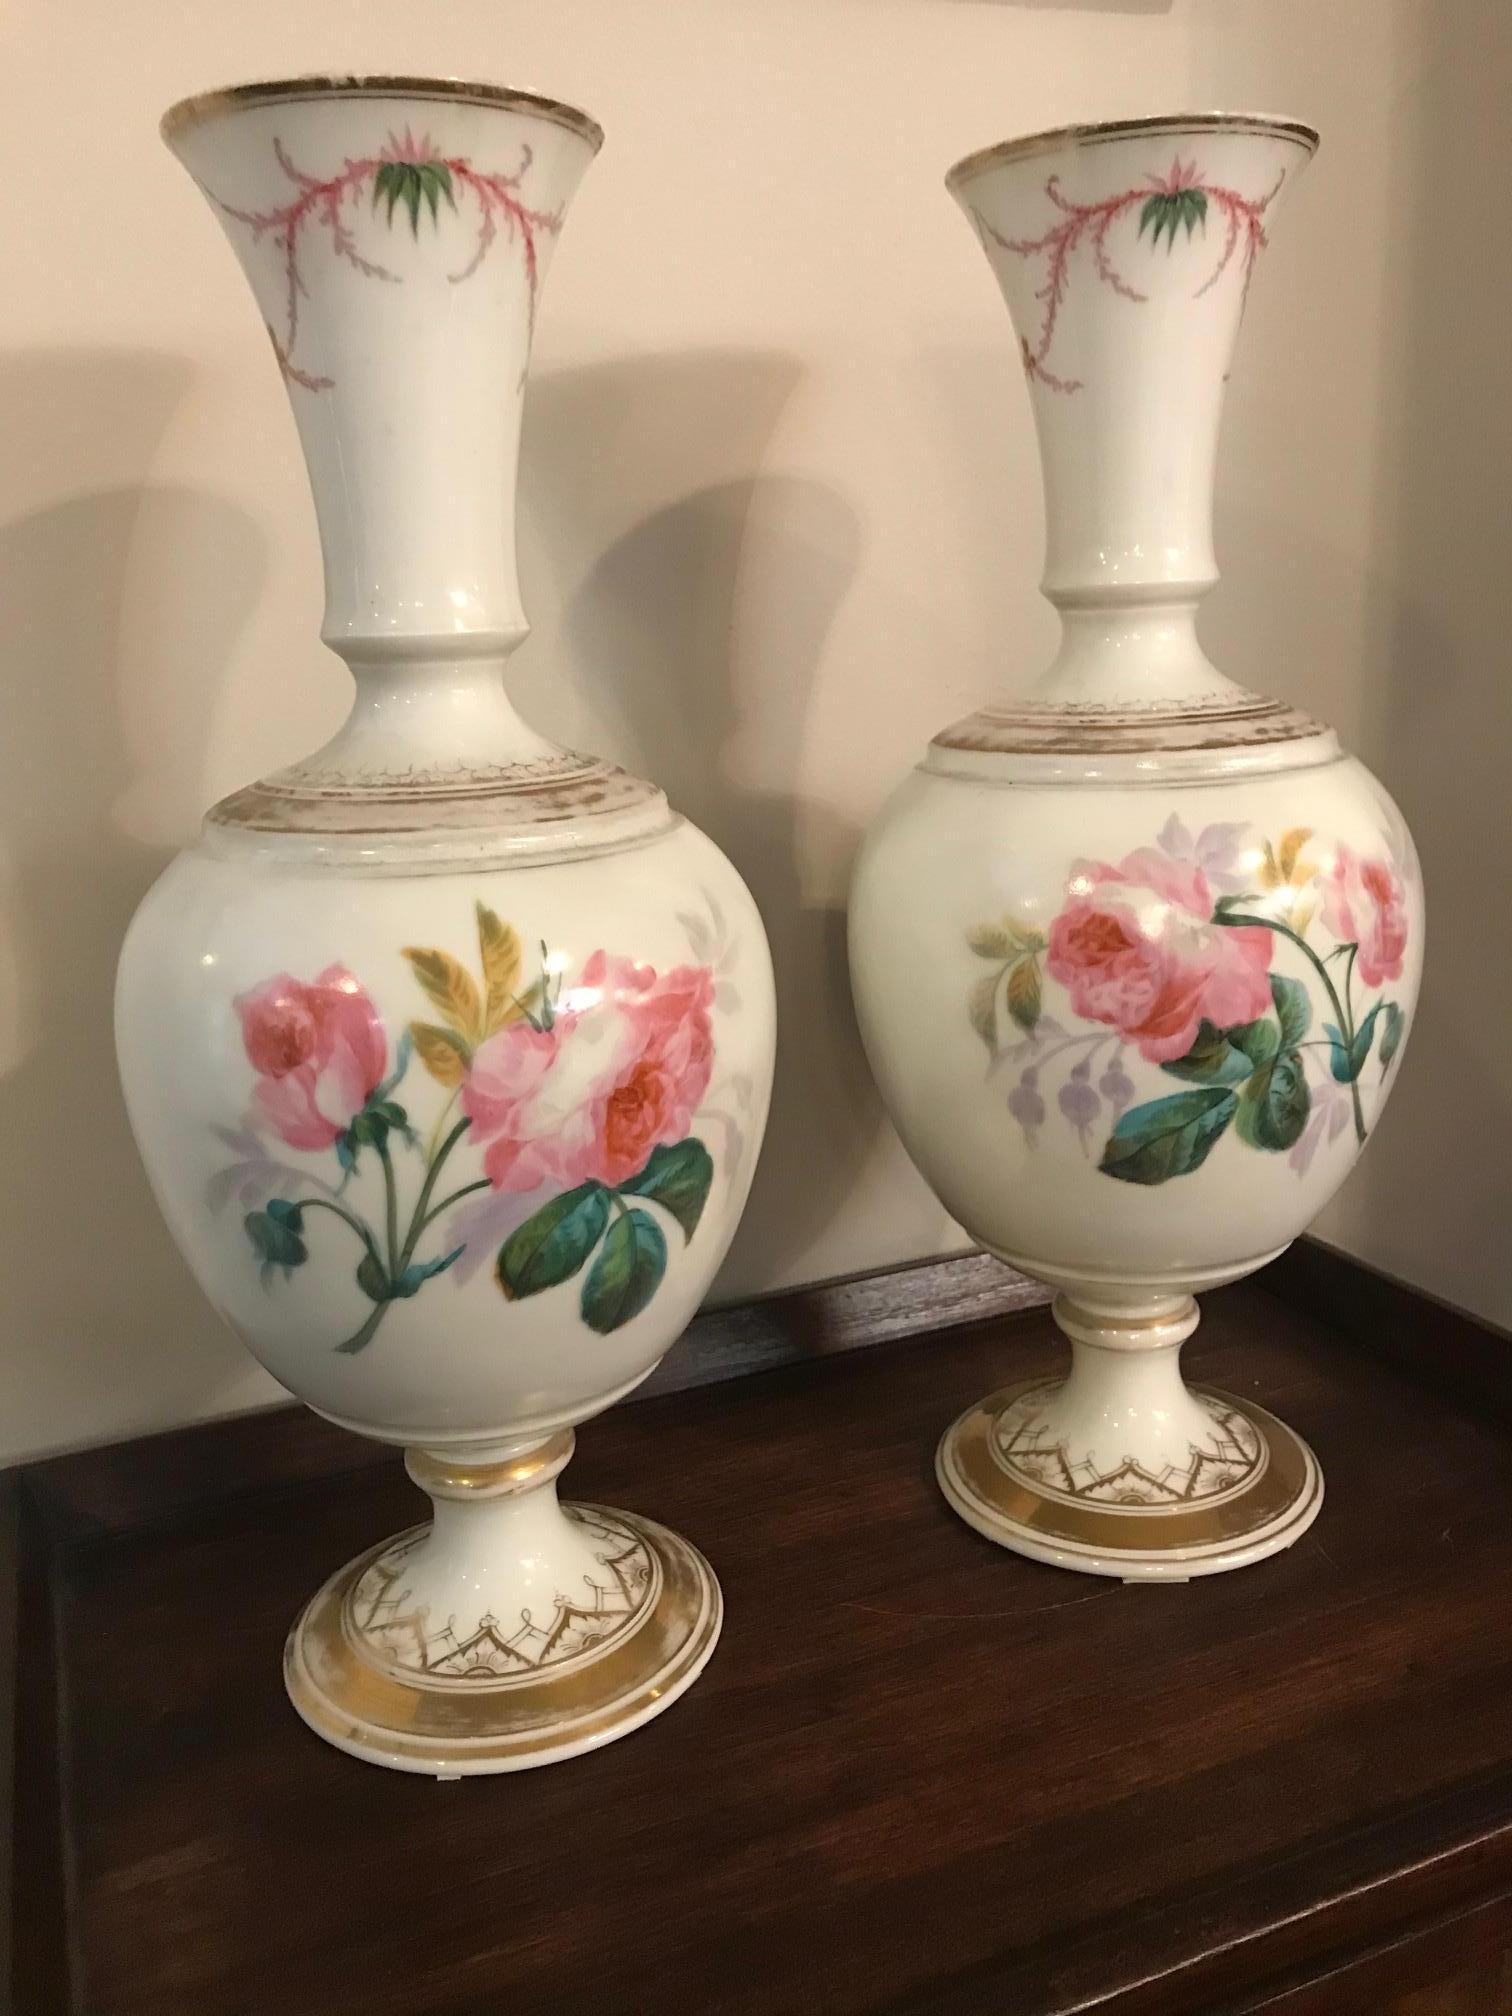 Paire de vases du 19e siècle à décor de fleurs, datant des années 1850.
Deux fleurs différentes côté décoration. Base décorée en or.